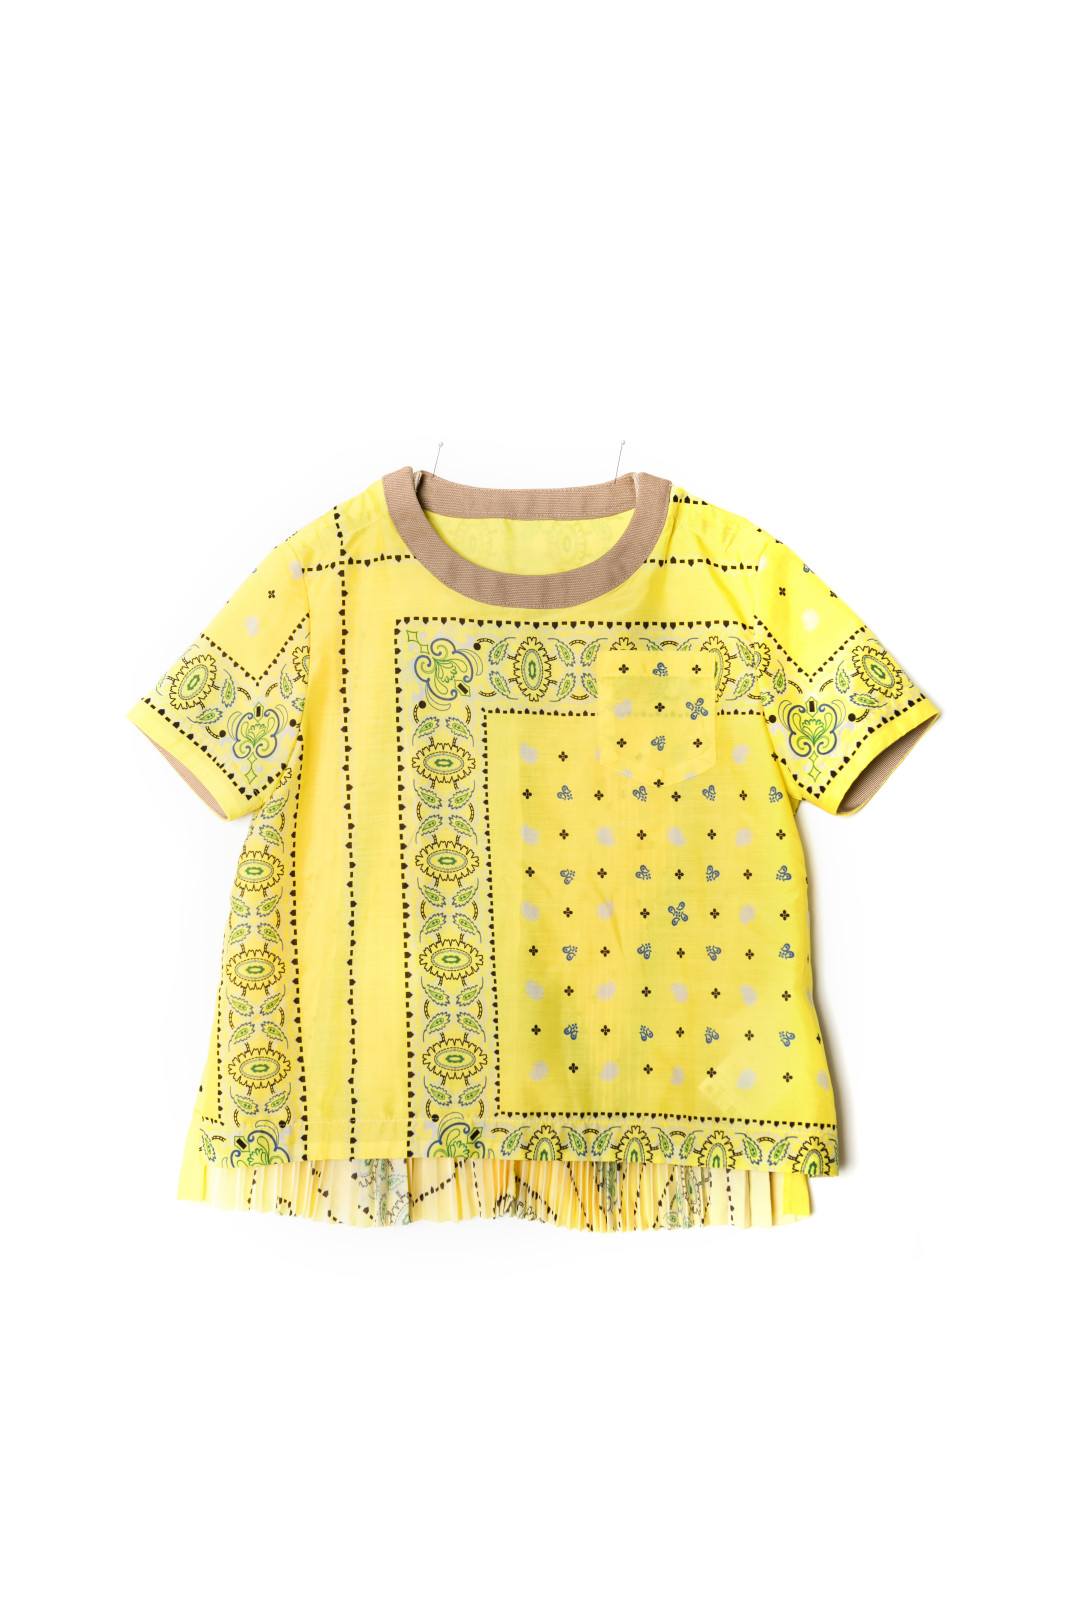 Shirt 17-00021K/Yellow 3万4,000円